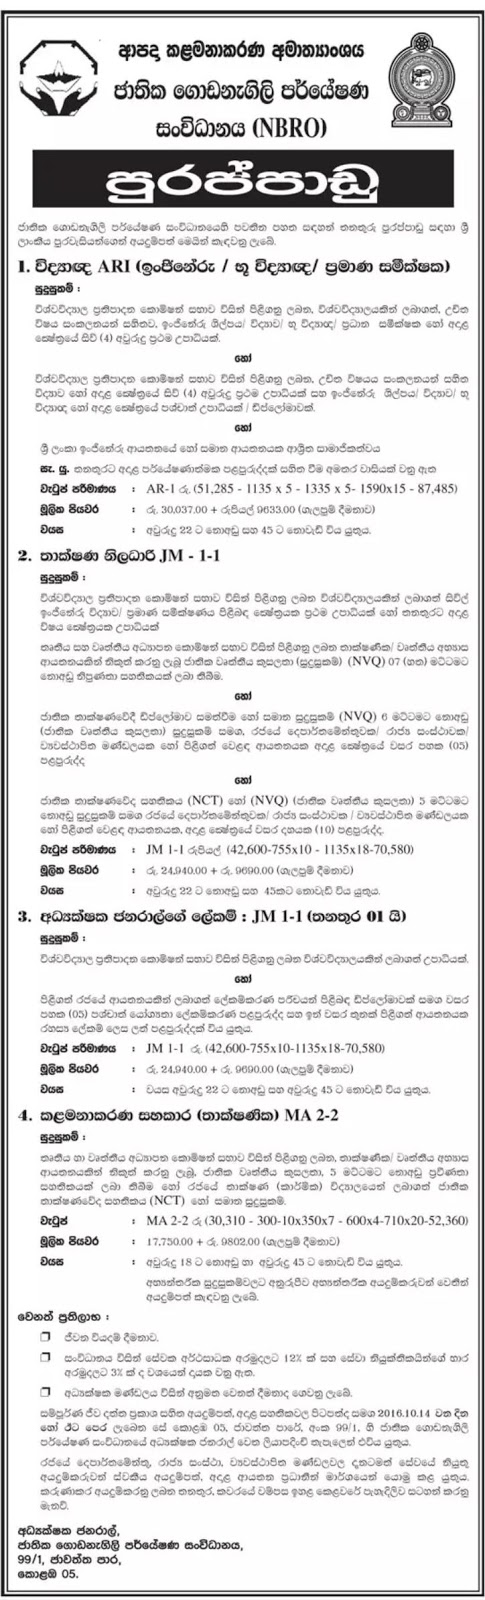 NBRO Sri Lanka Jobs Vacancies